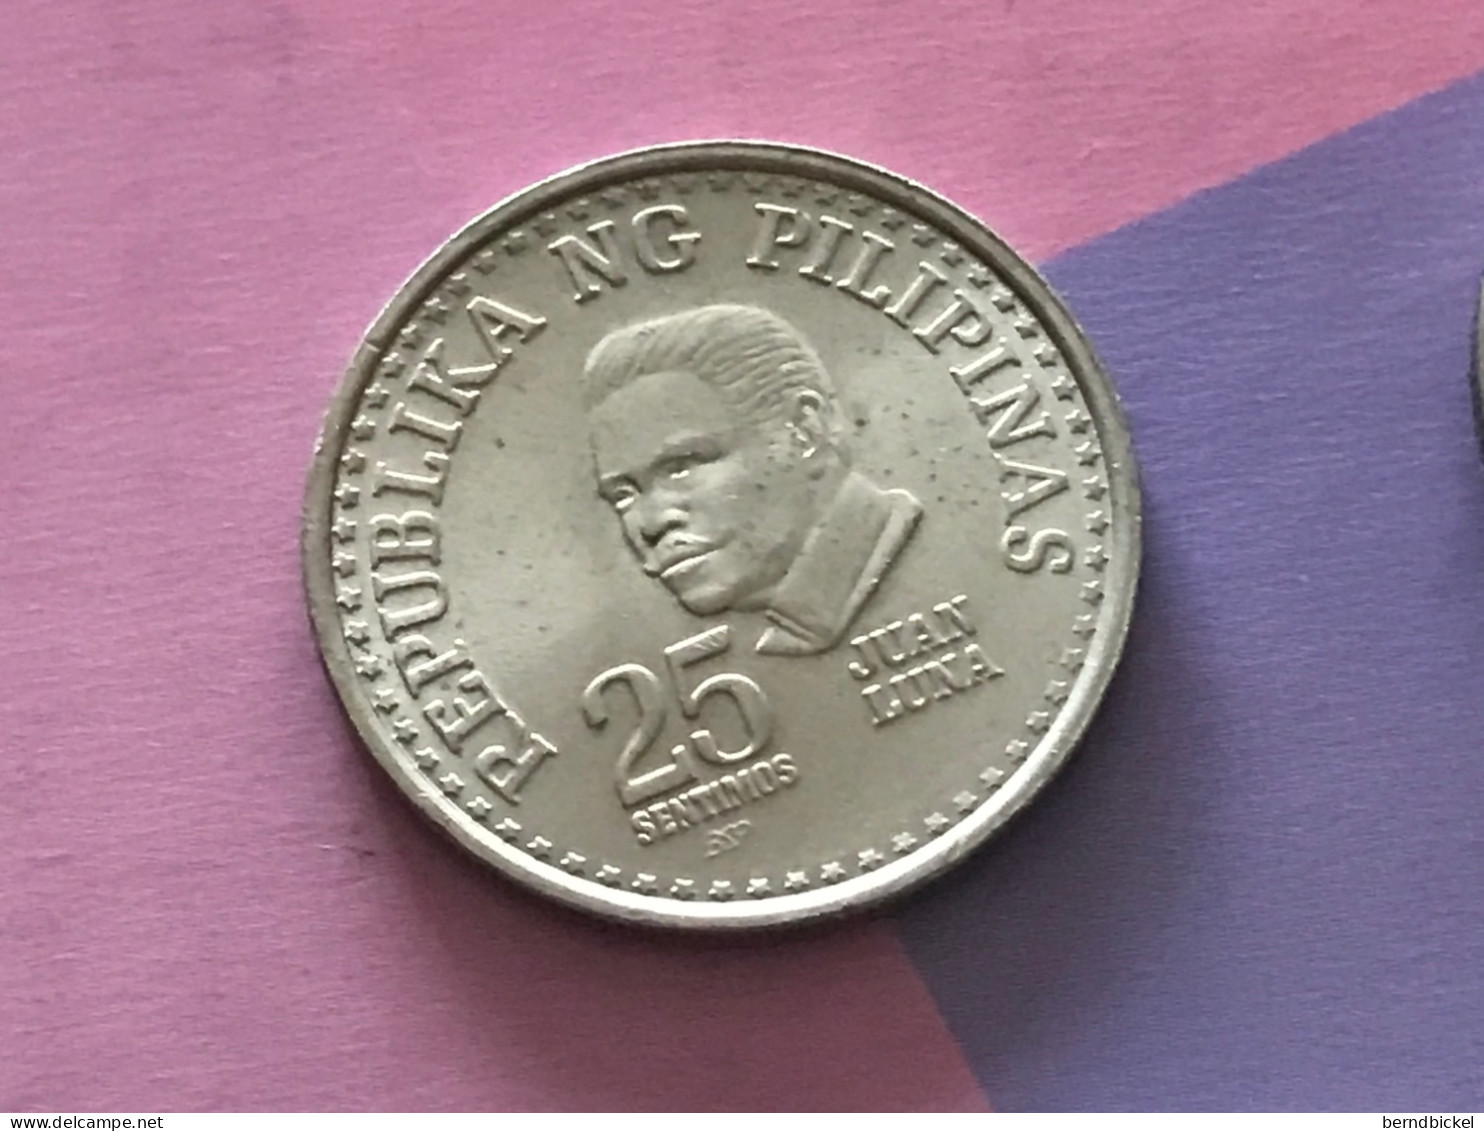 Münze Münzen Umlaufmünze Philippinen 25 Centavos 1979 - Philippinen